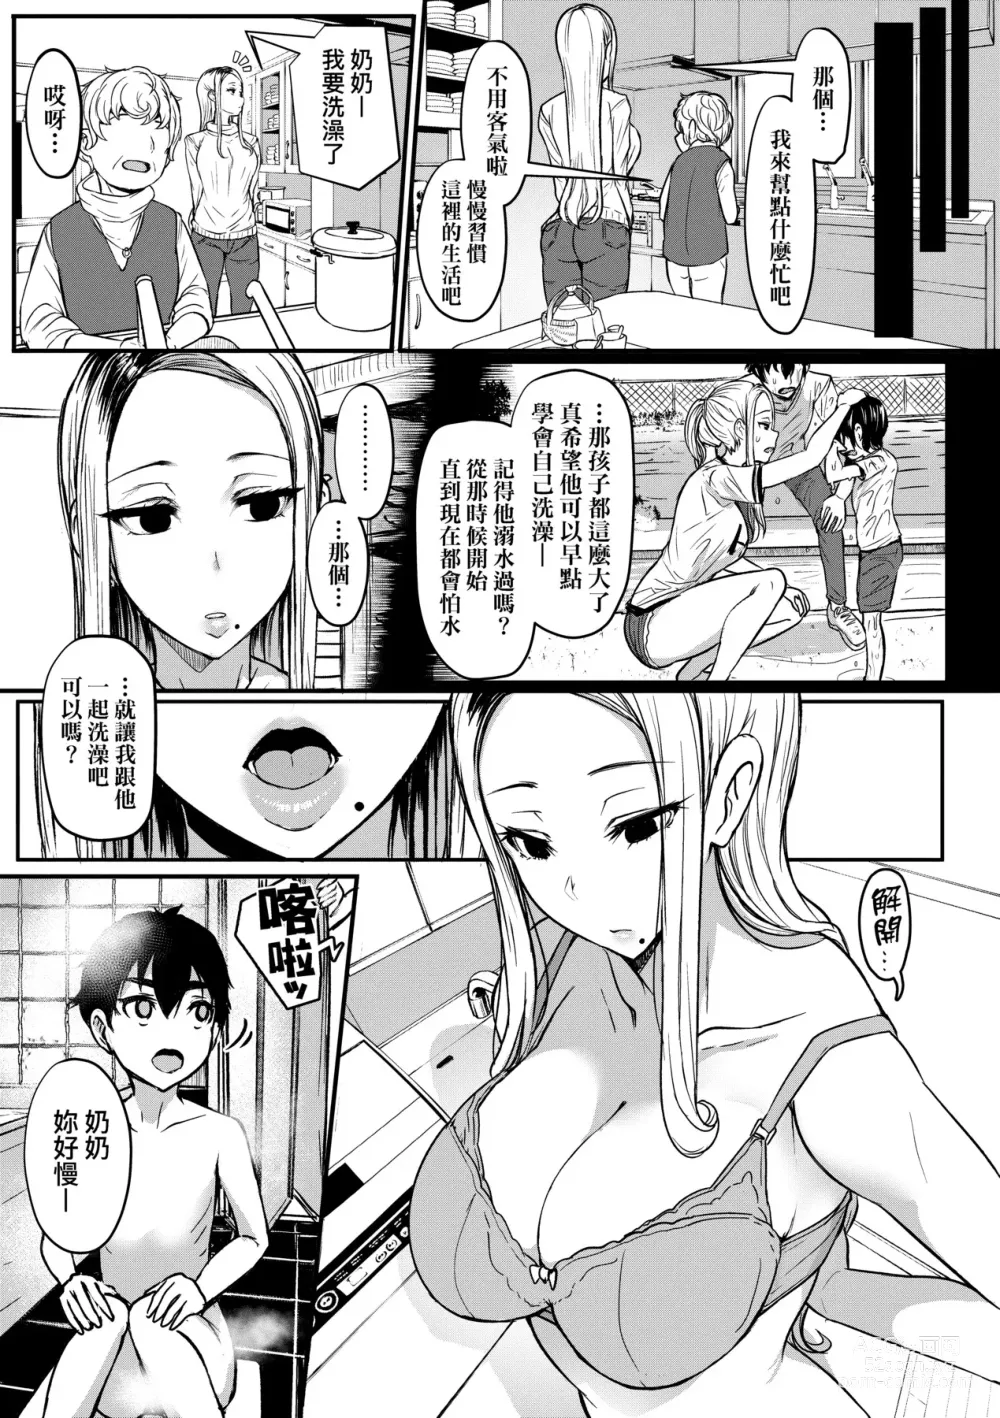 Page 270 of doujinshi Iikedo, Naysyone. (decensored)